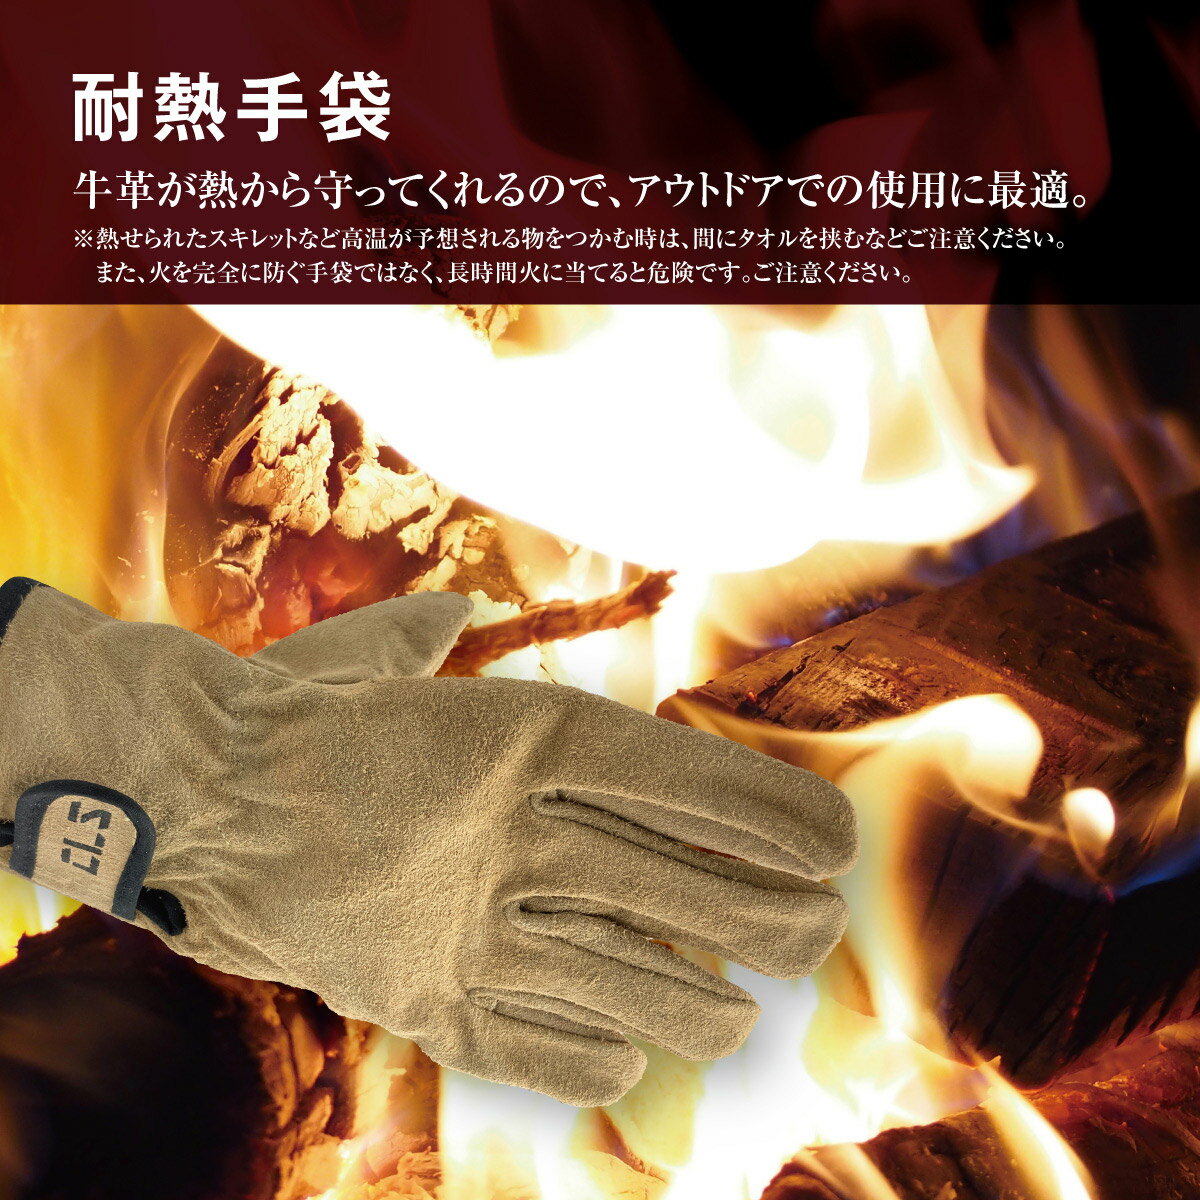 キャンプグローブ 耐熱 グローブ 本革レザー 厚手 手袋 レザーグローブ バーベキュー アウトドア 牛革 保護 キャンプ BBQ b-gloves01